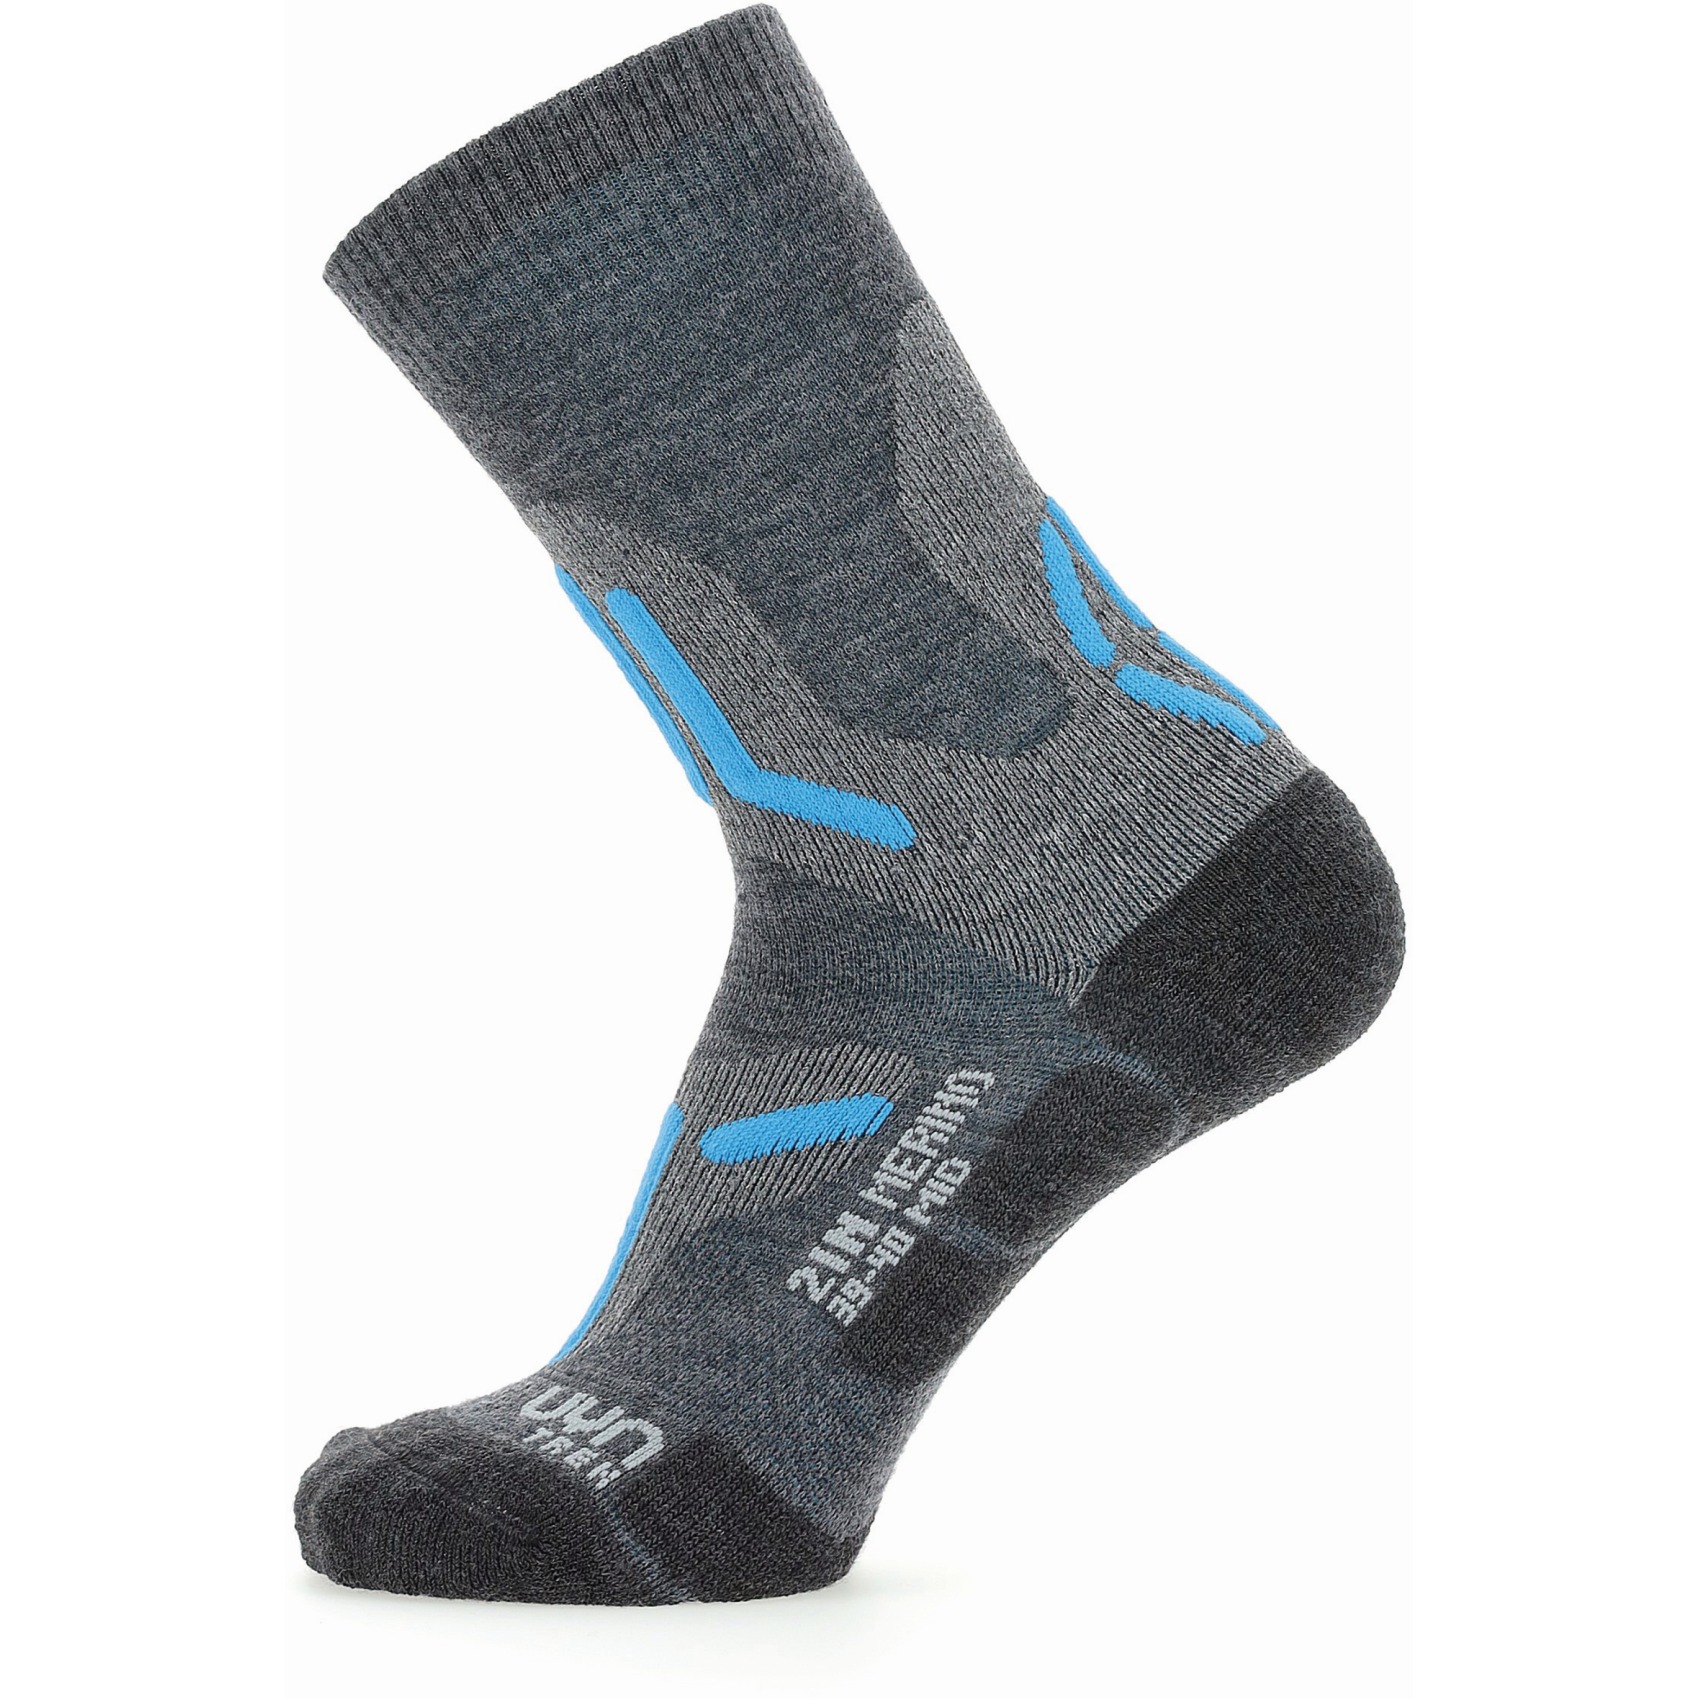 Produktbild von UYN Trekking 2In Merino Mid Cut Socken Damen - Mid Grey/Turquoise